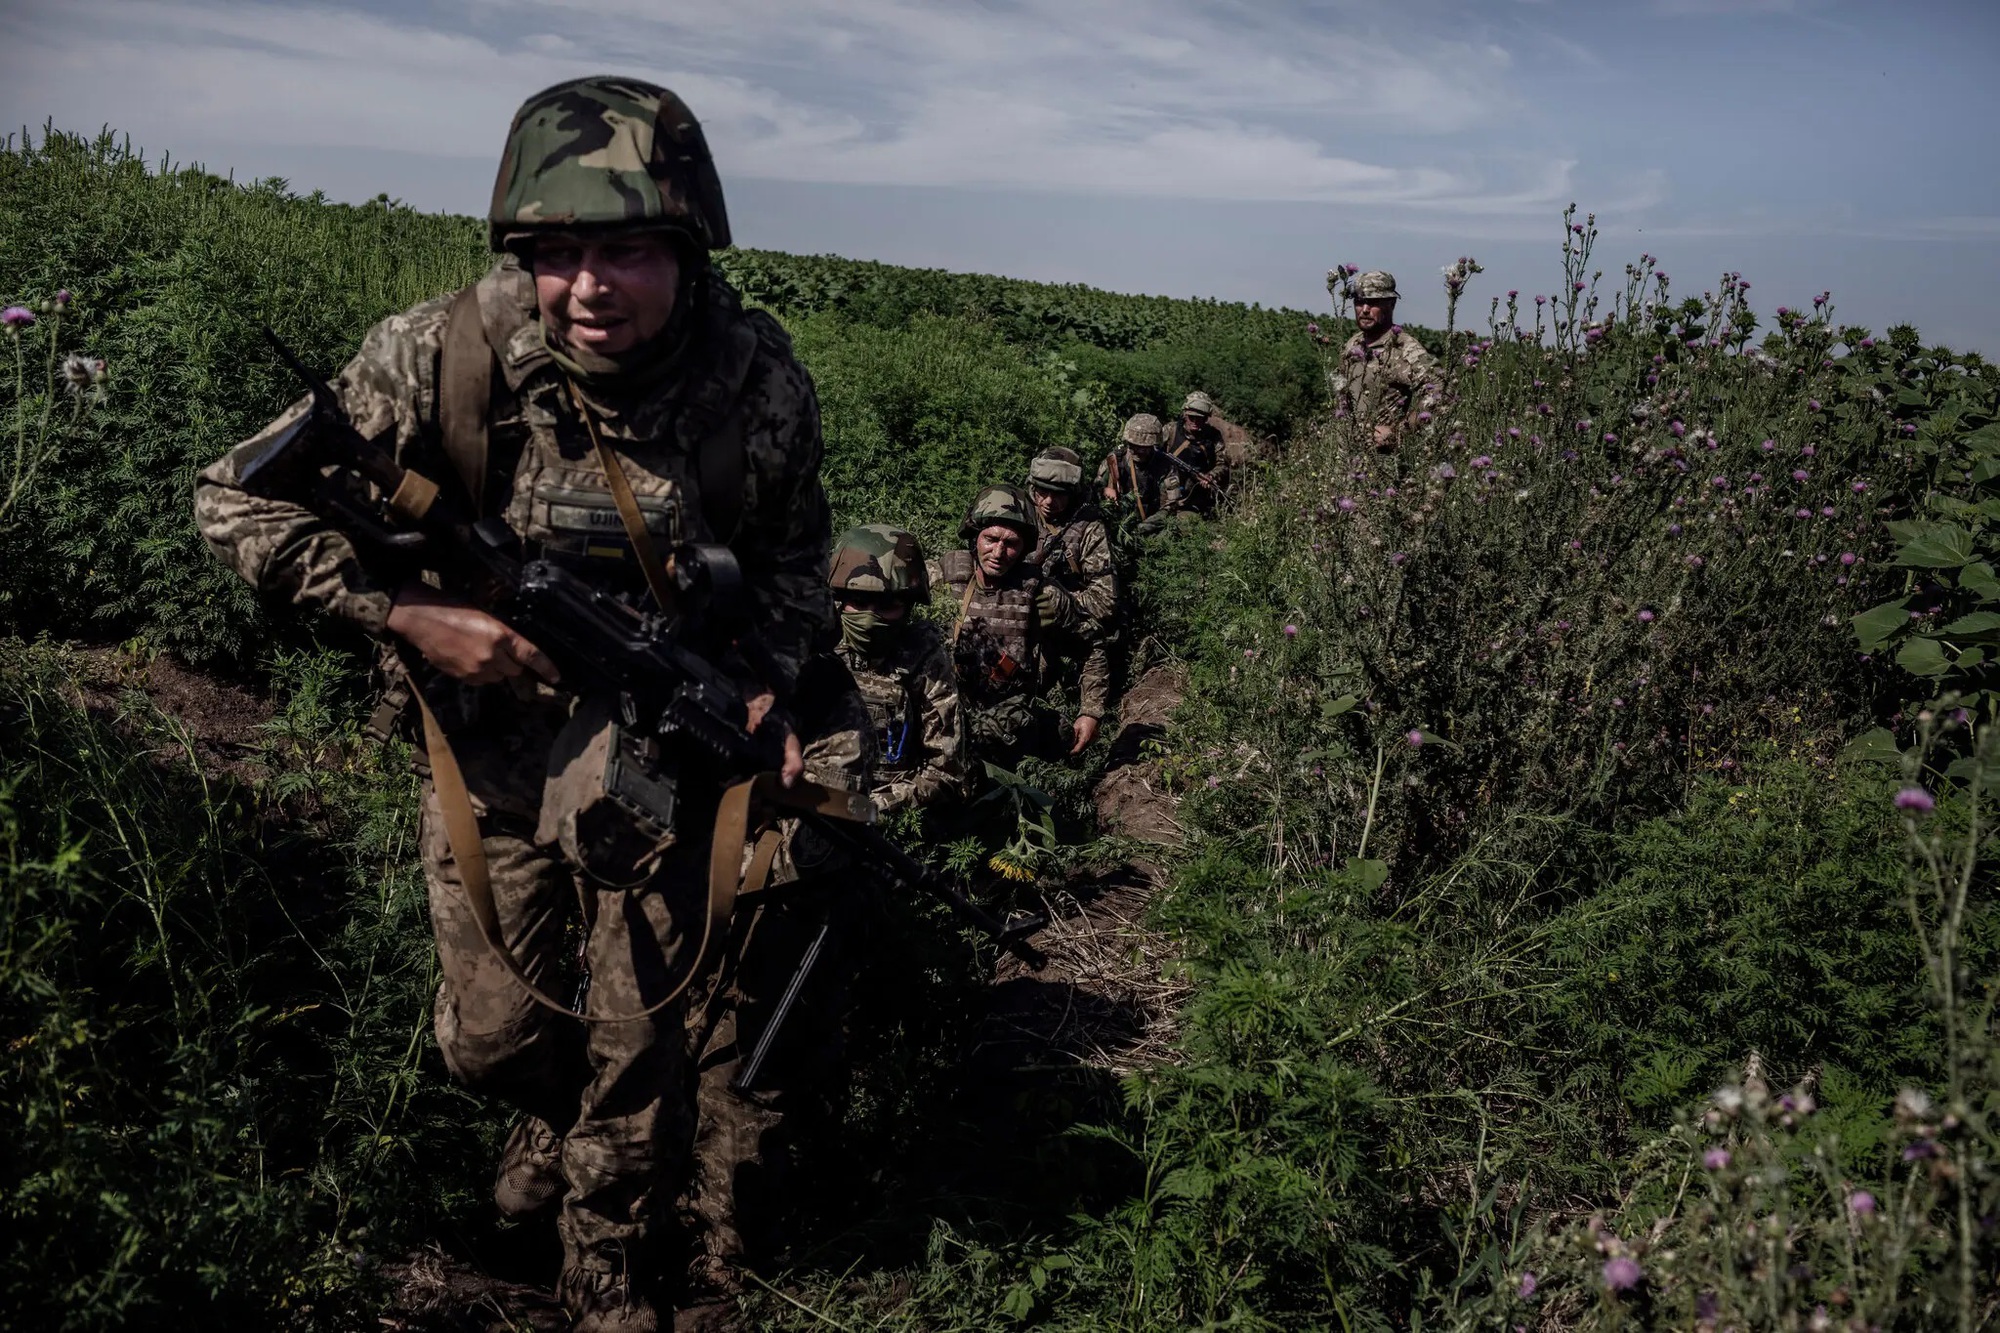 Đội quân lính thủy đánh bộ Ukraine bền bỉ chiến đấu với quân Nga bất chấp thương vong nặng nề - Ảnh 1.